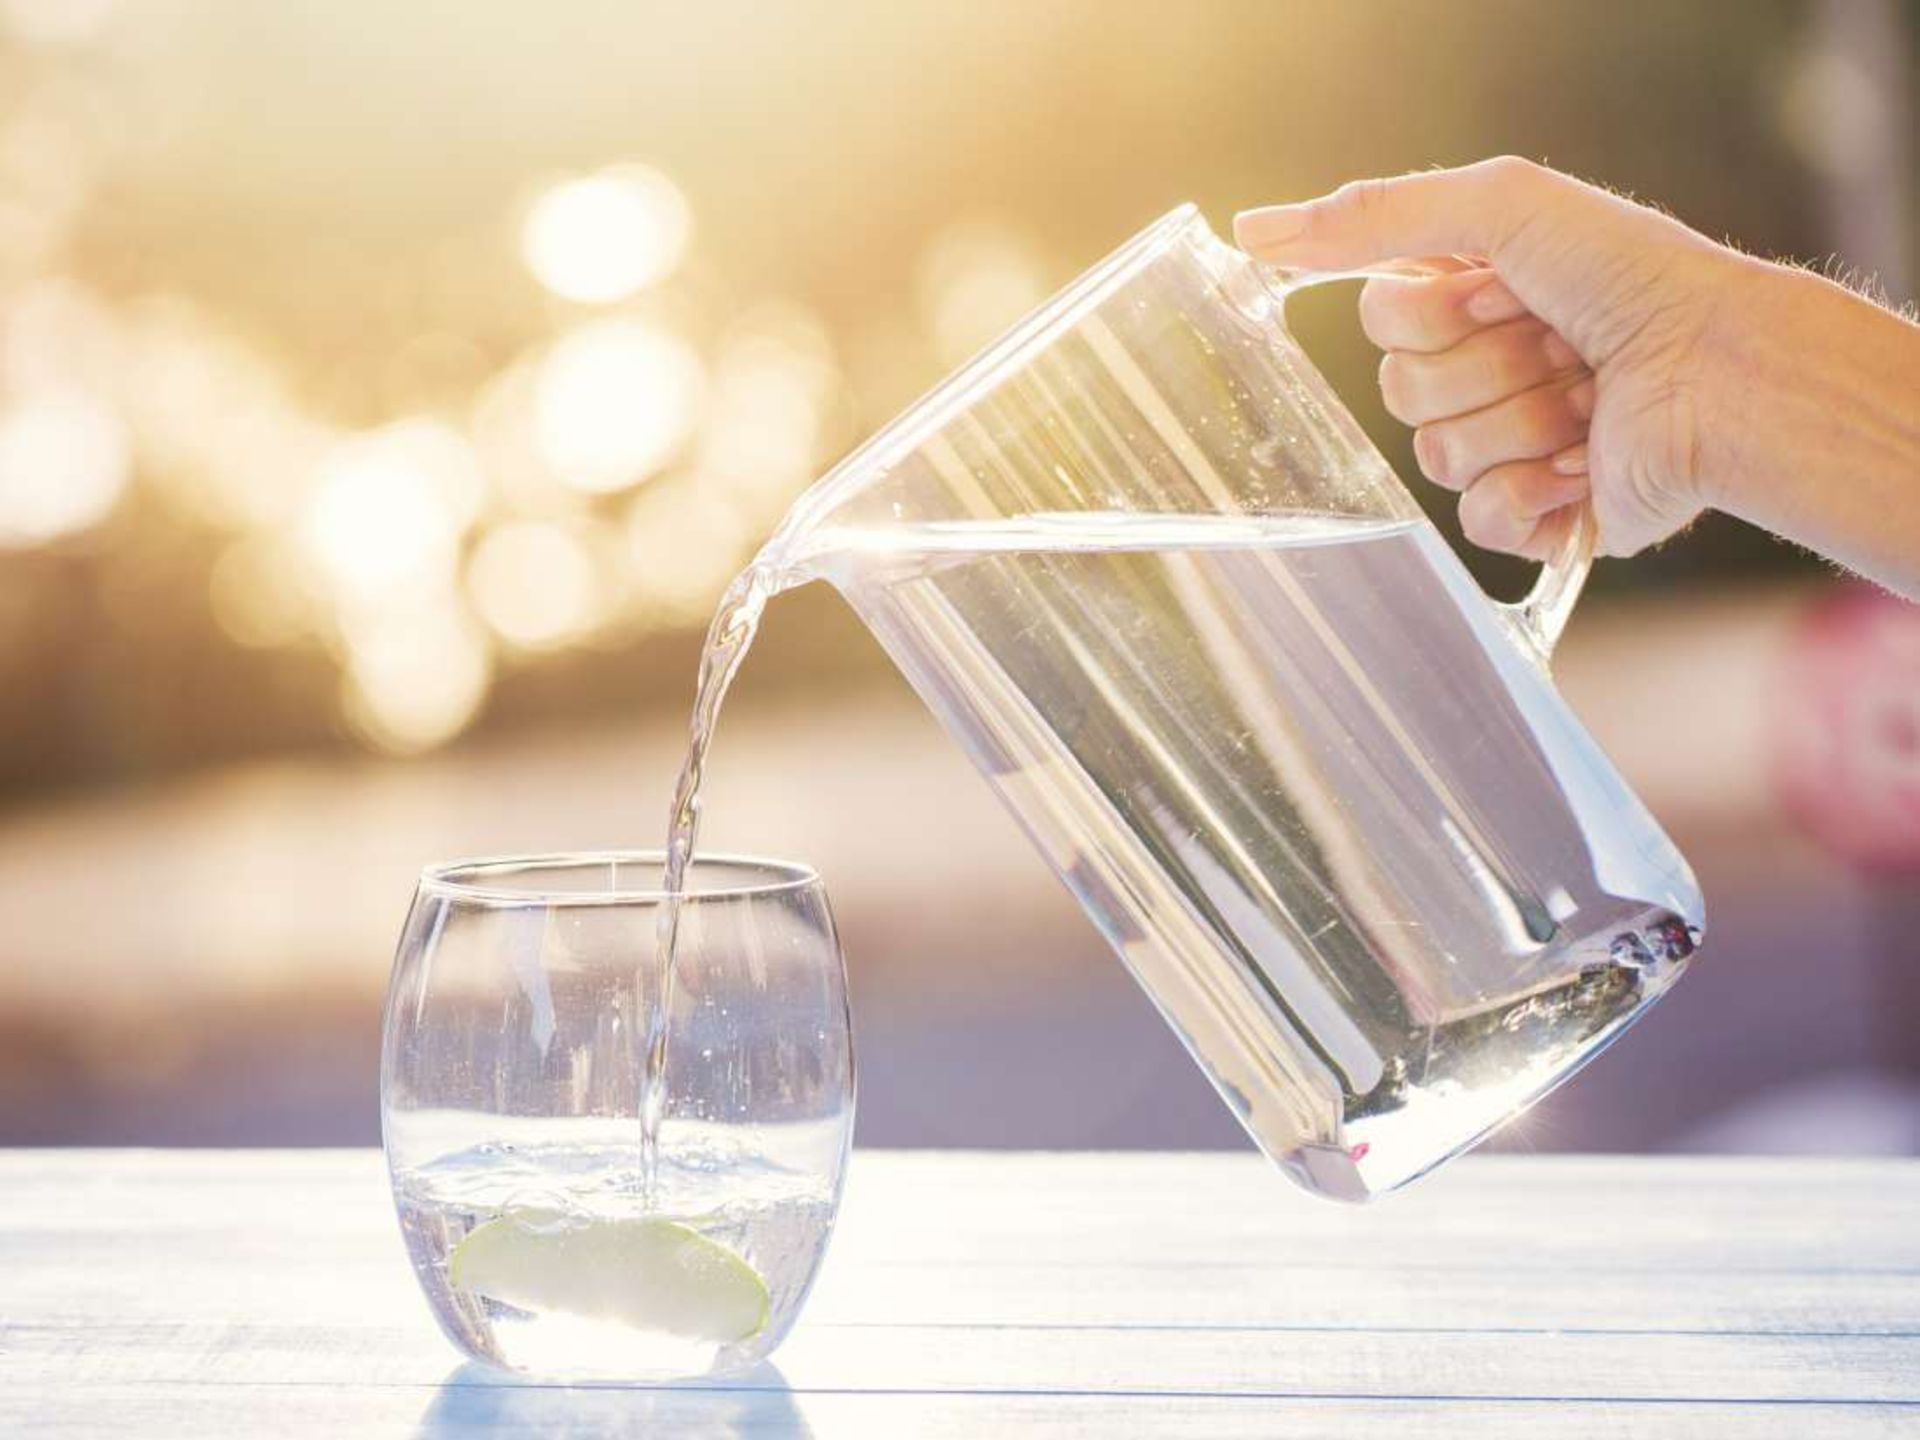 مرجع متخصصين ايران مصرف آب سالم براي پيشگيري از ايجاد سنگ كليه